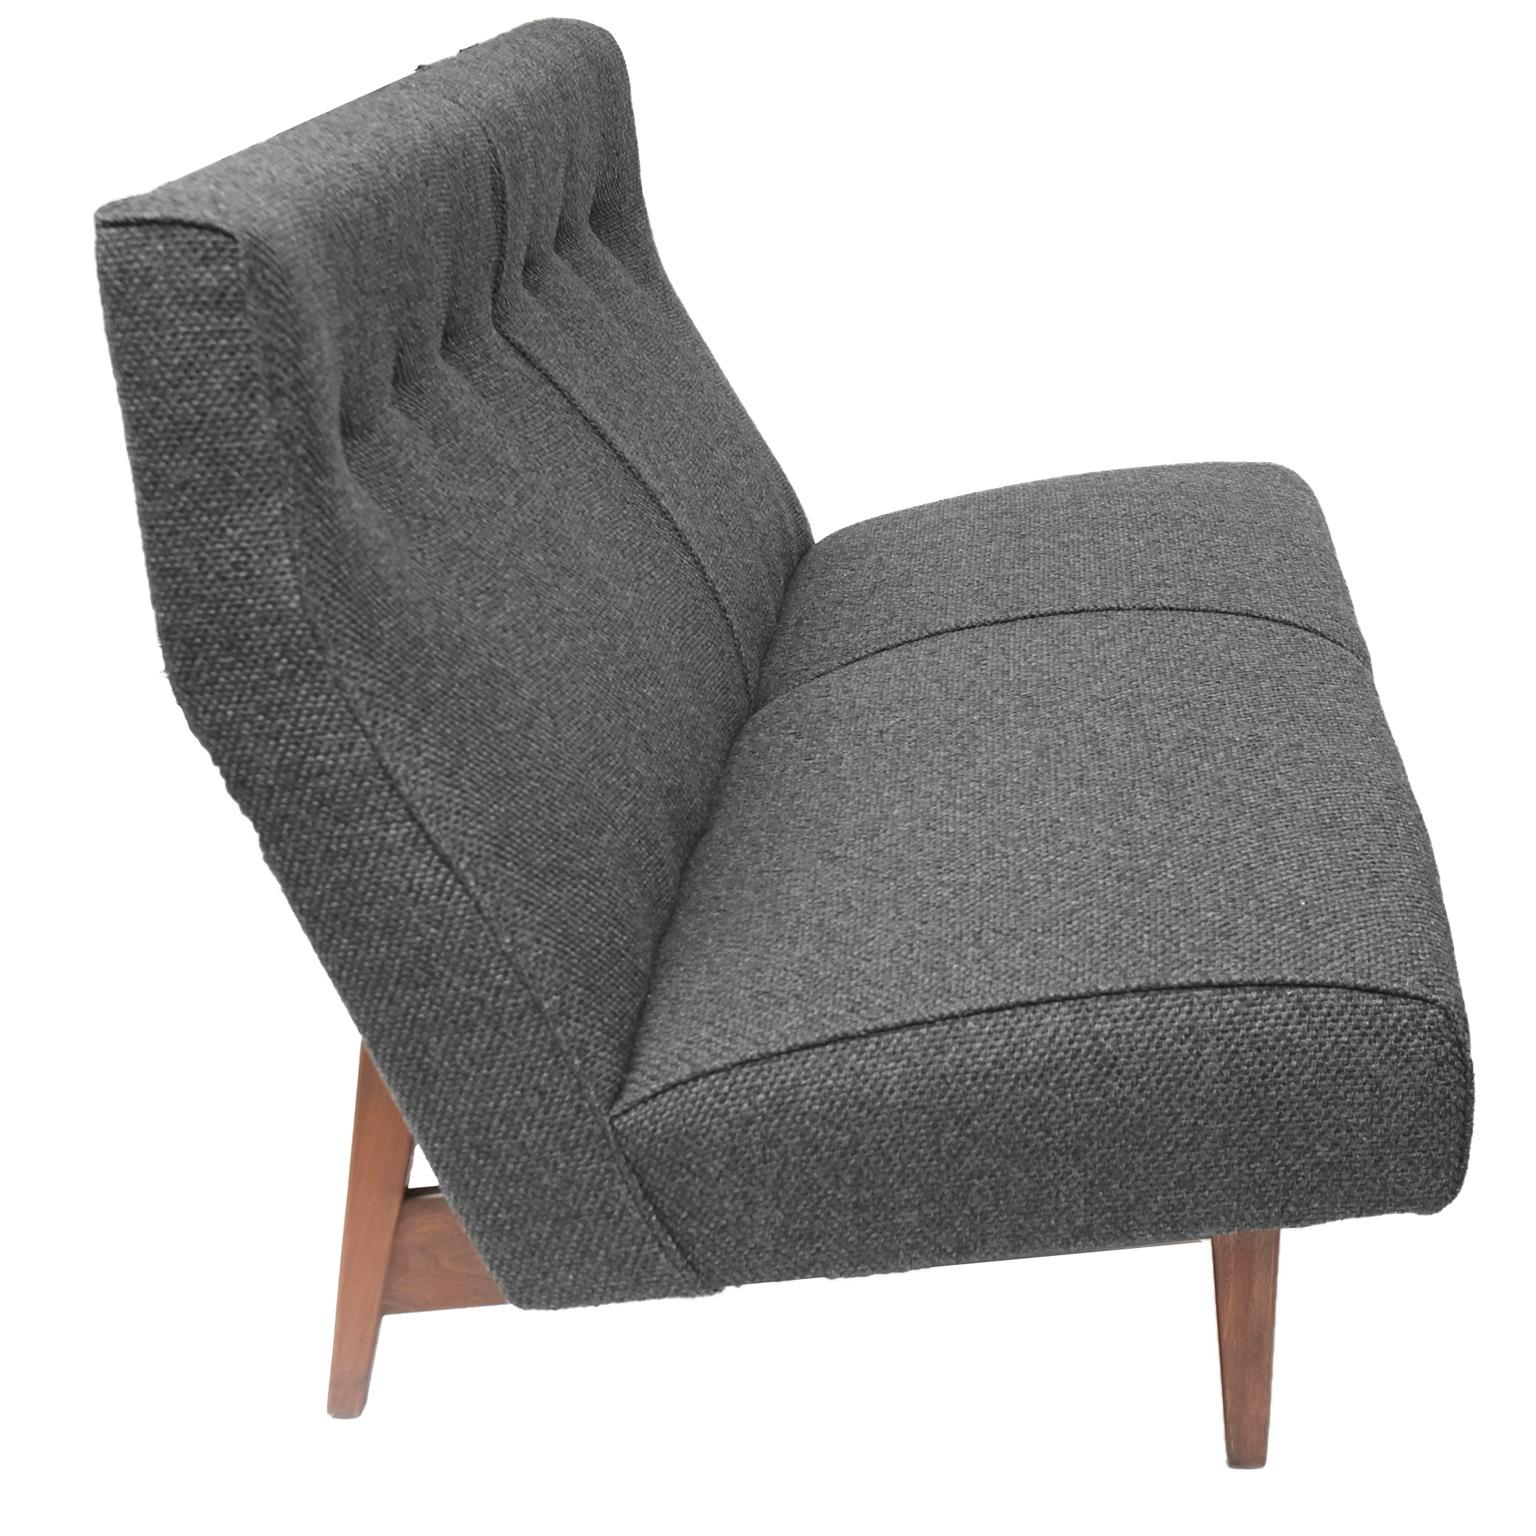 Jens Risom Charcoal Grey Sofa and Matching Love Seat Model U251 4